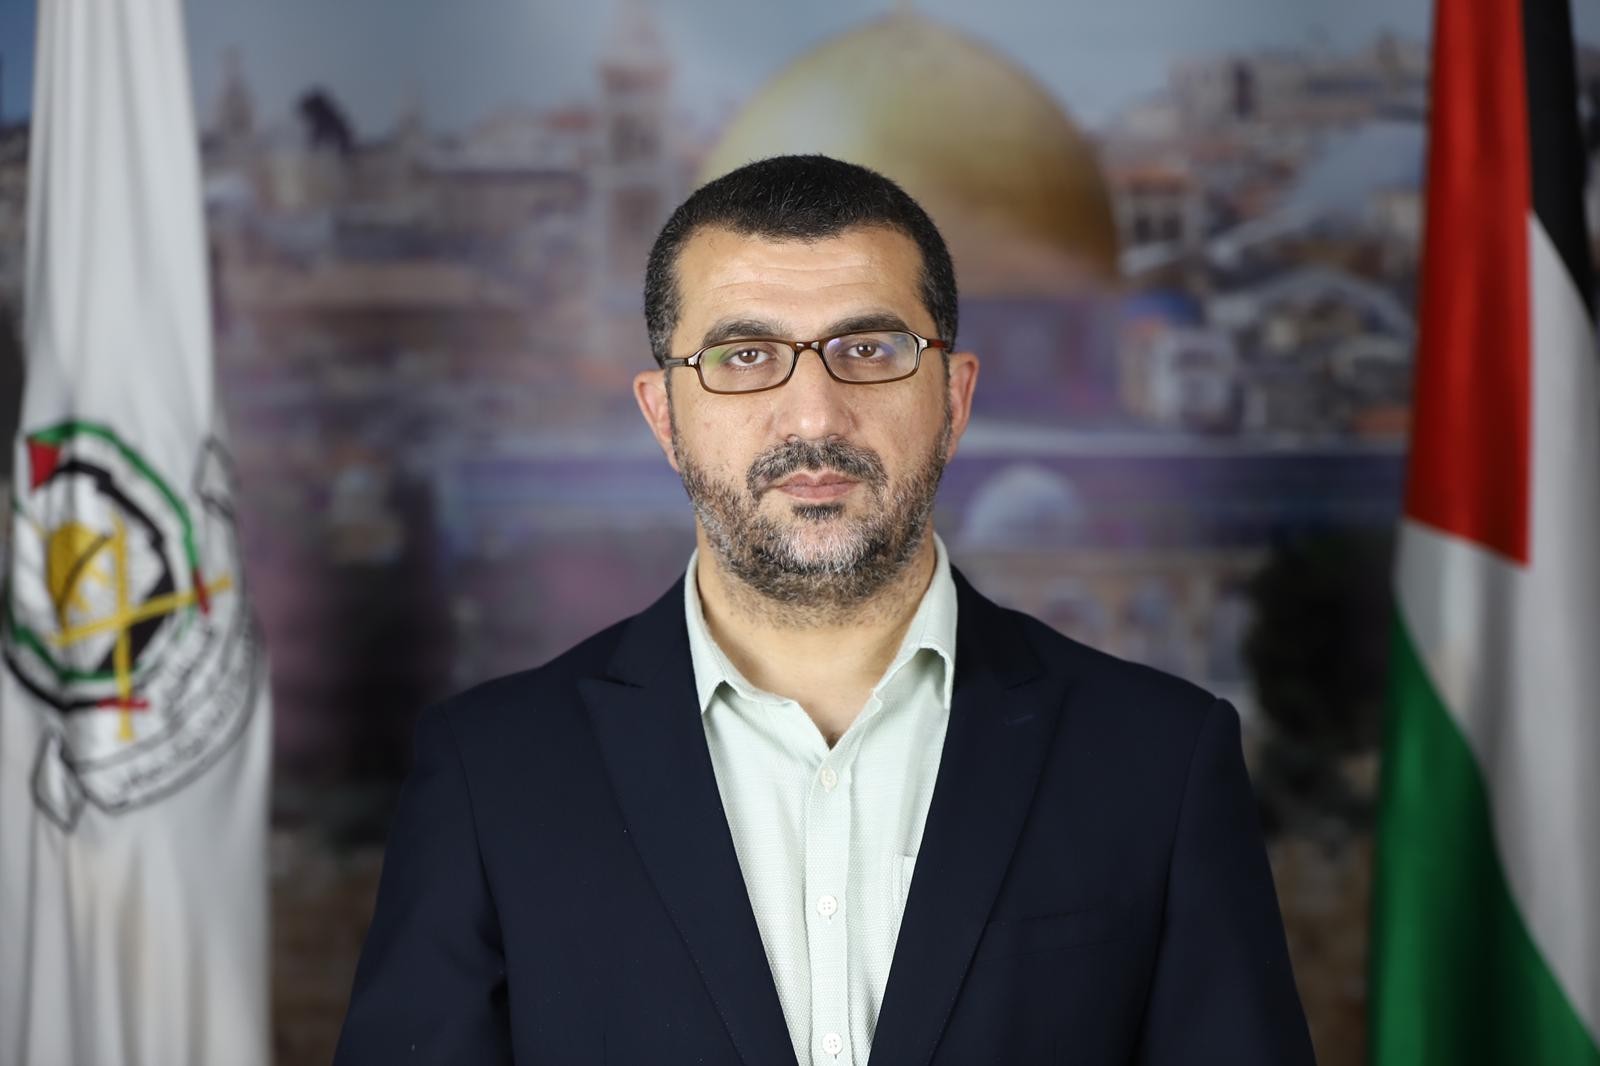 المتحدث باسم حركة "حماس" عن مدينة القدس محمد حمادة